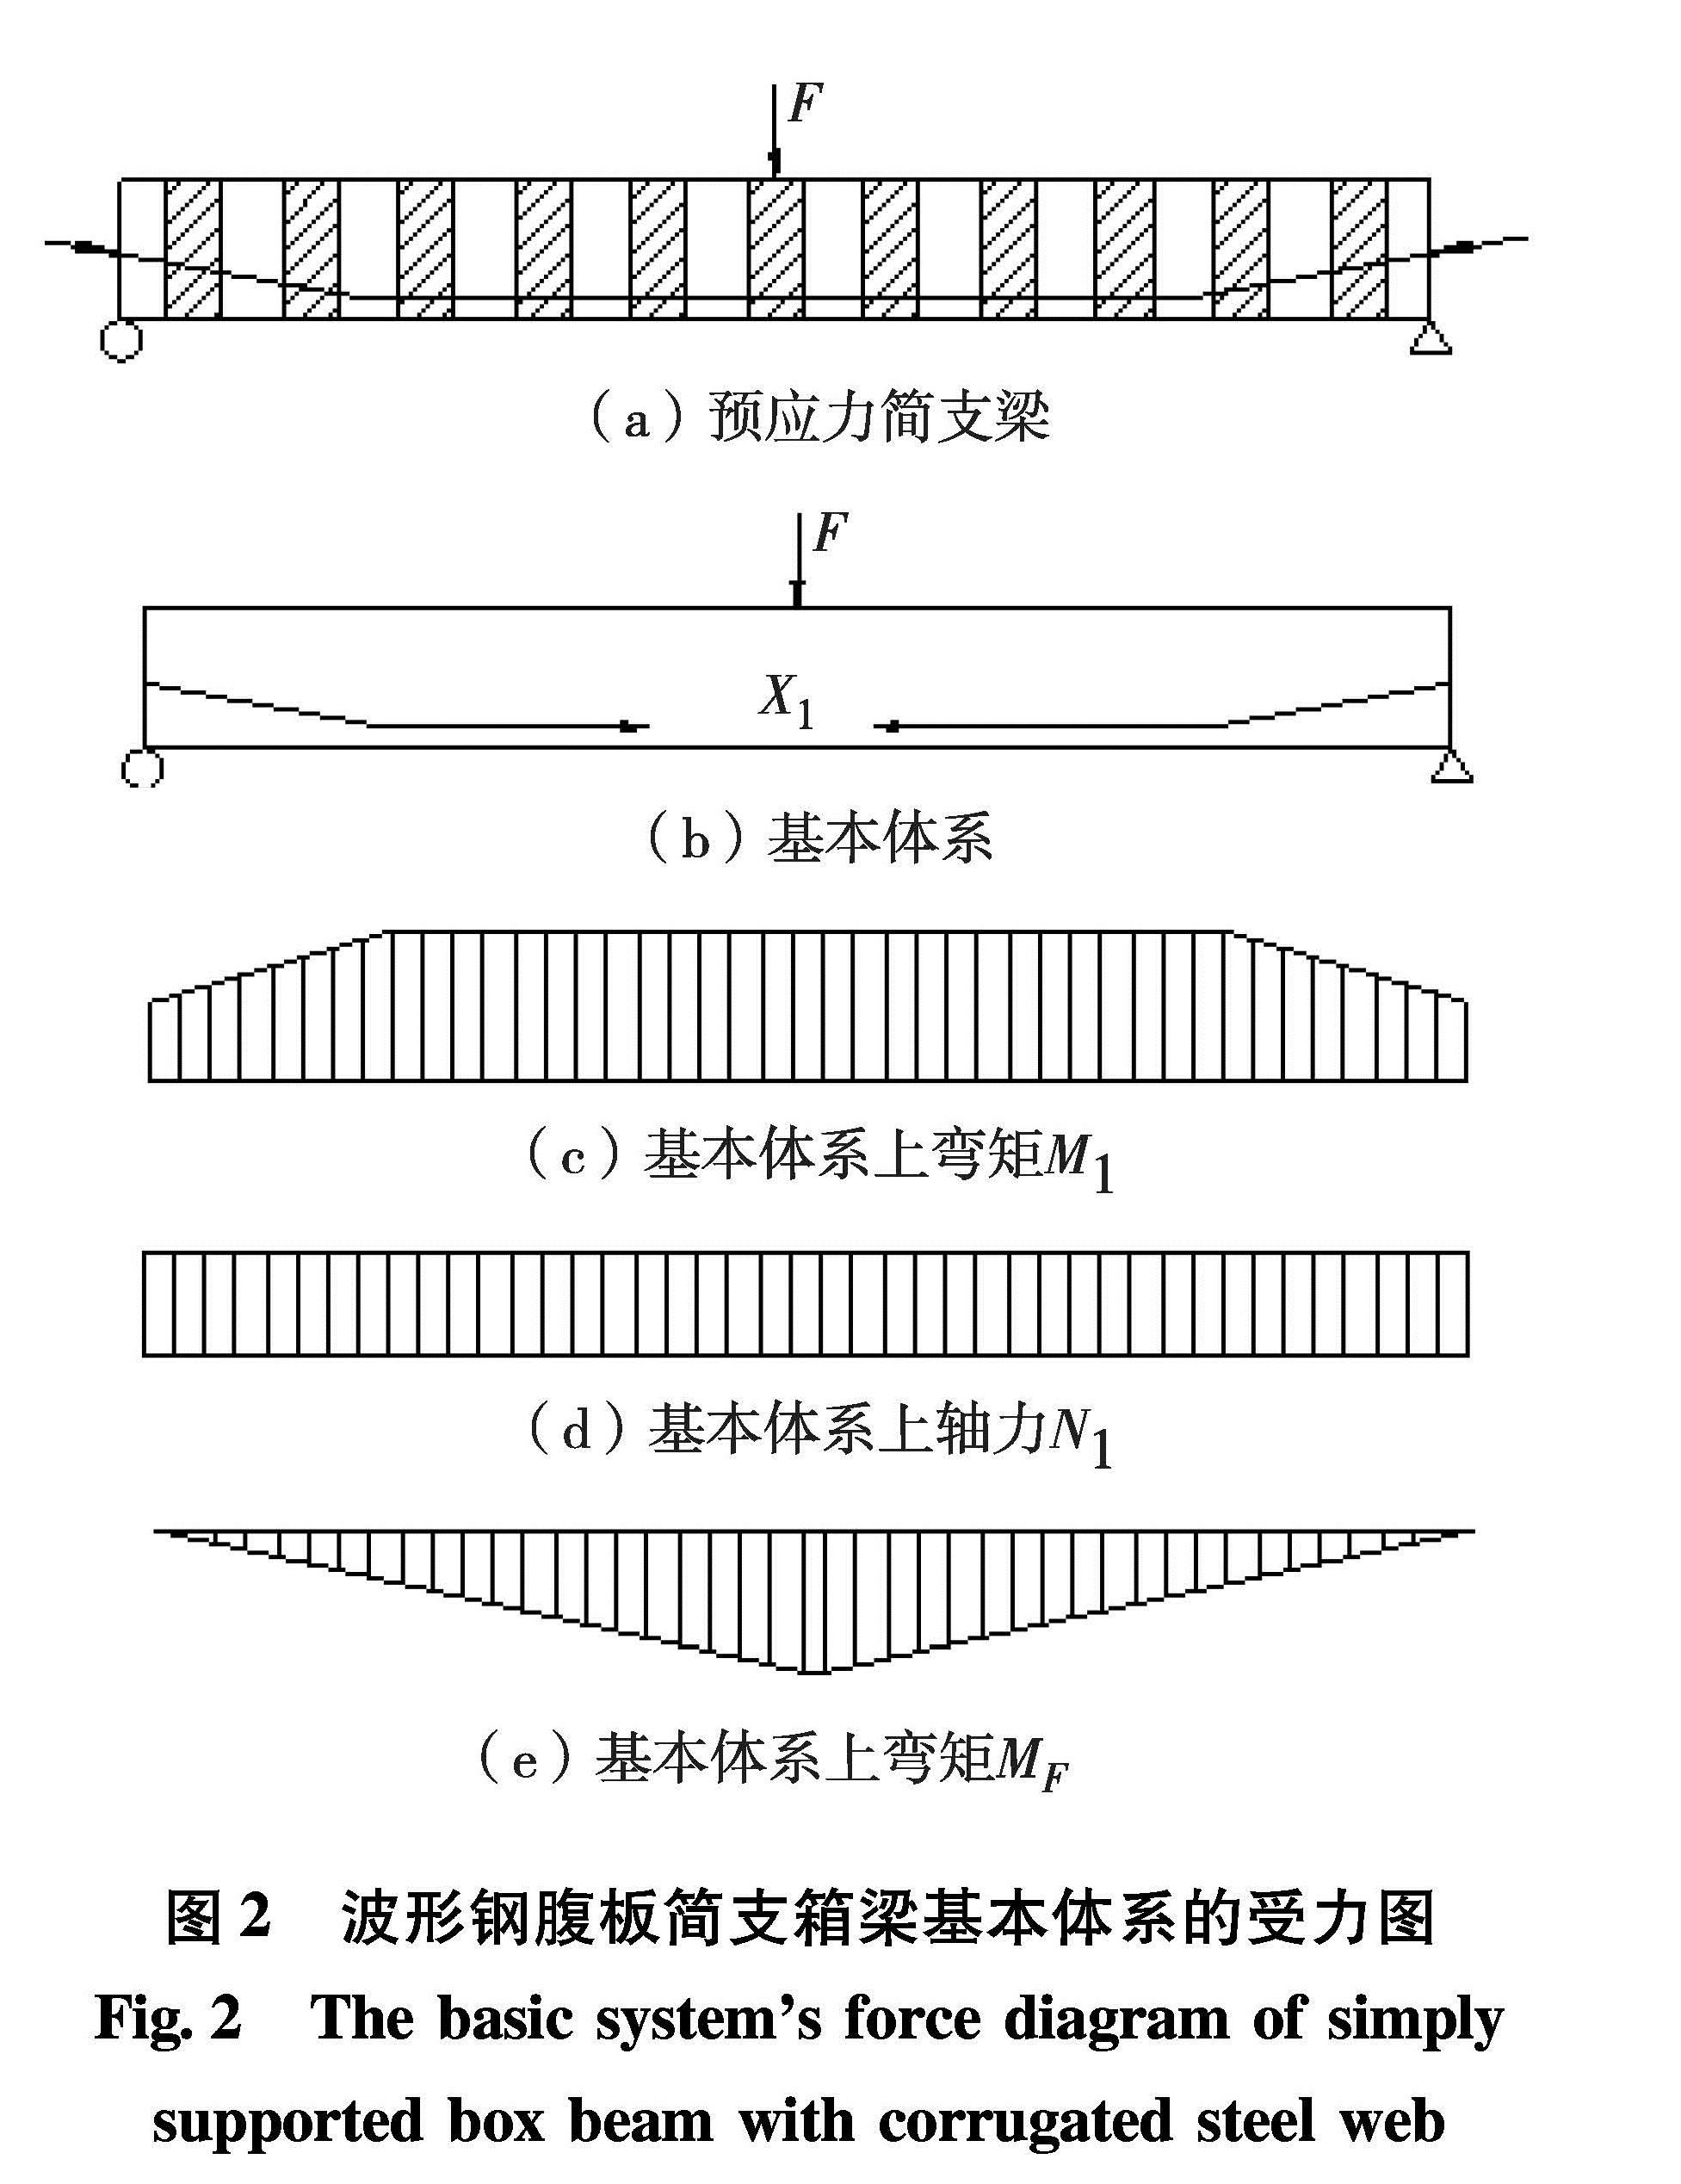 图2 波形钢腹板简支箱梁基本体系的受力图<br/>Fig.2 The basic system's force diagram of simply supported box beam with corrugated steel web